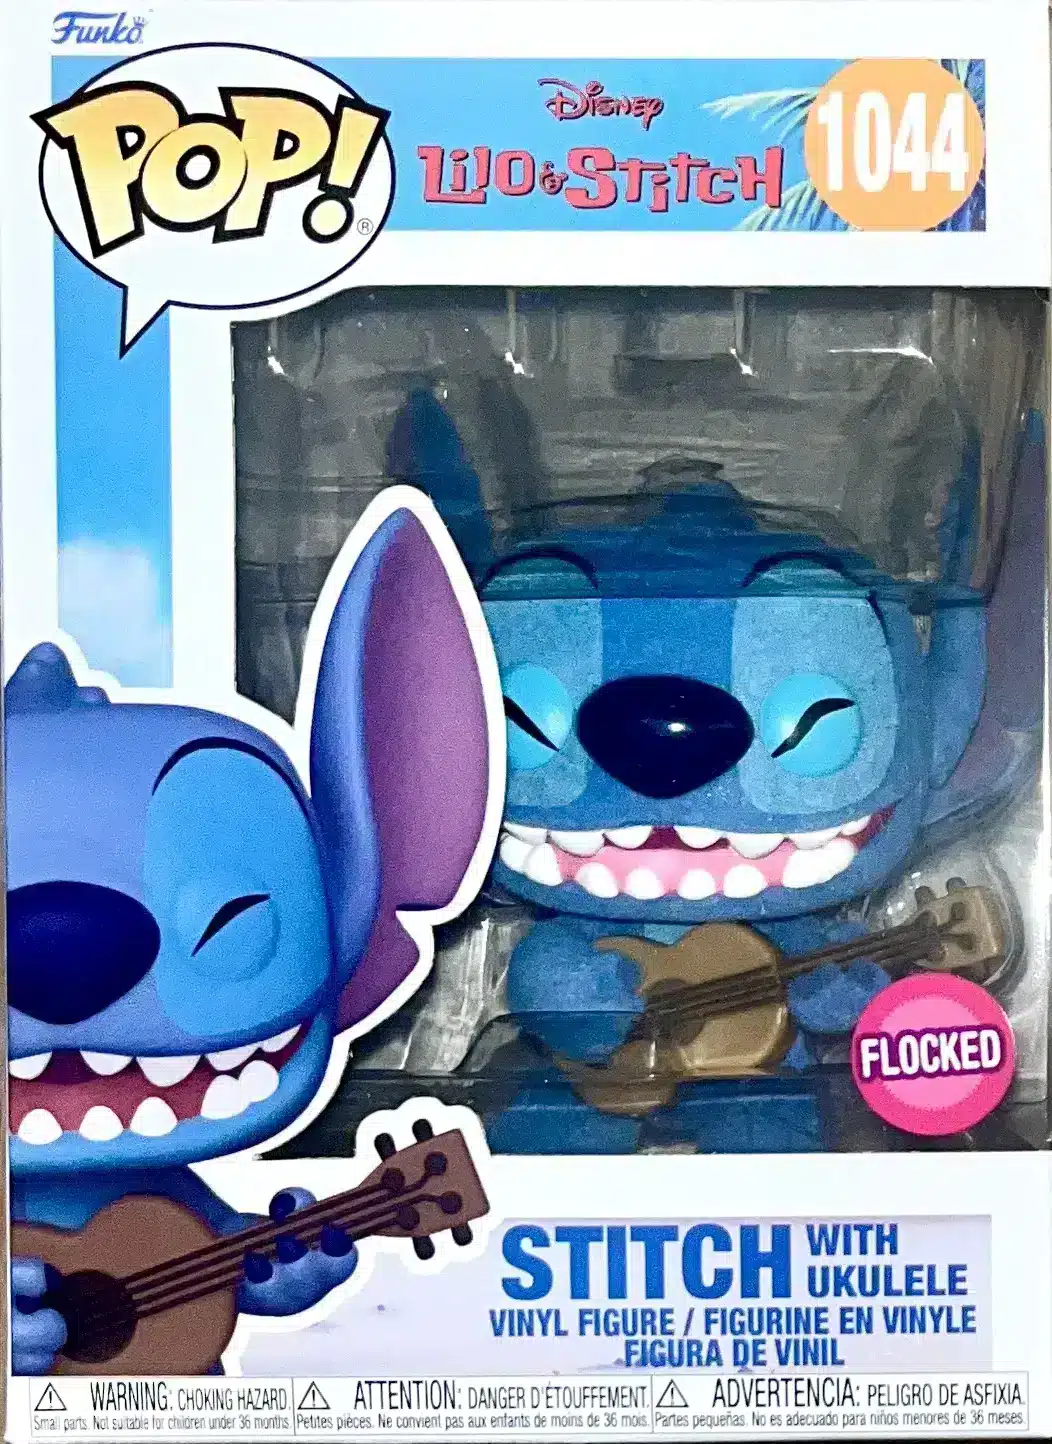 Funko Pop! Disney: Lilo & Stitch - Stitch with Ukelele